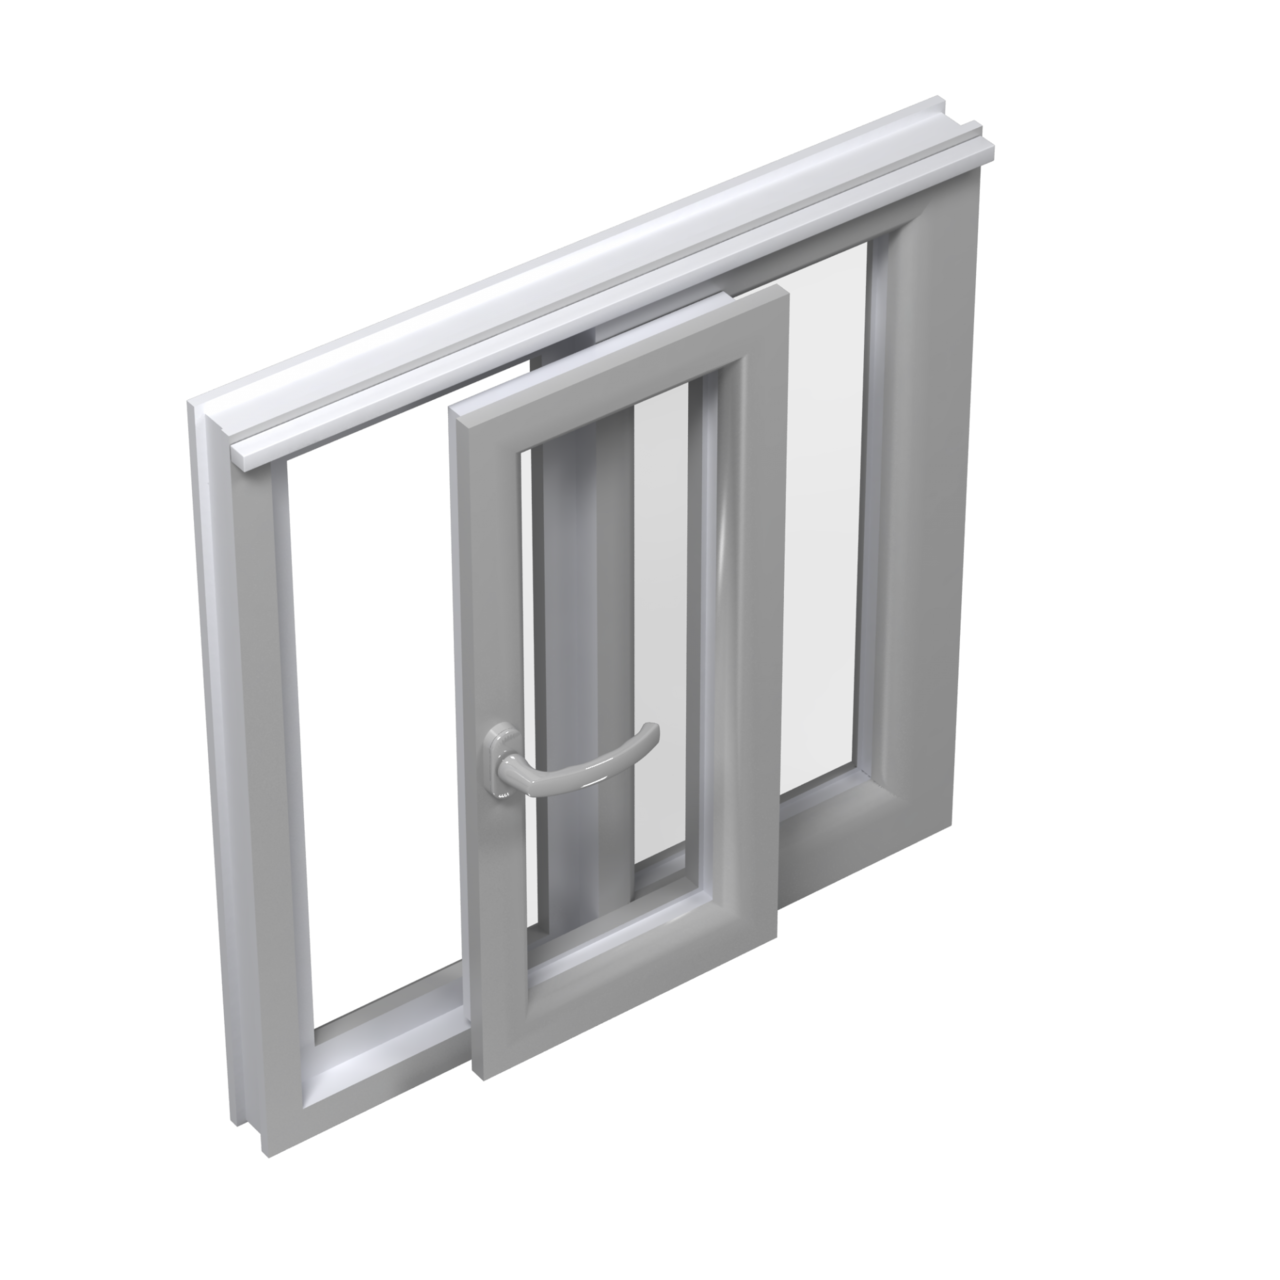 PSK doors (parallel slide-and-tilt doors)